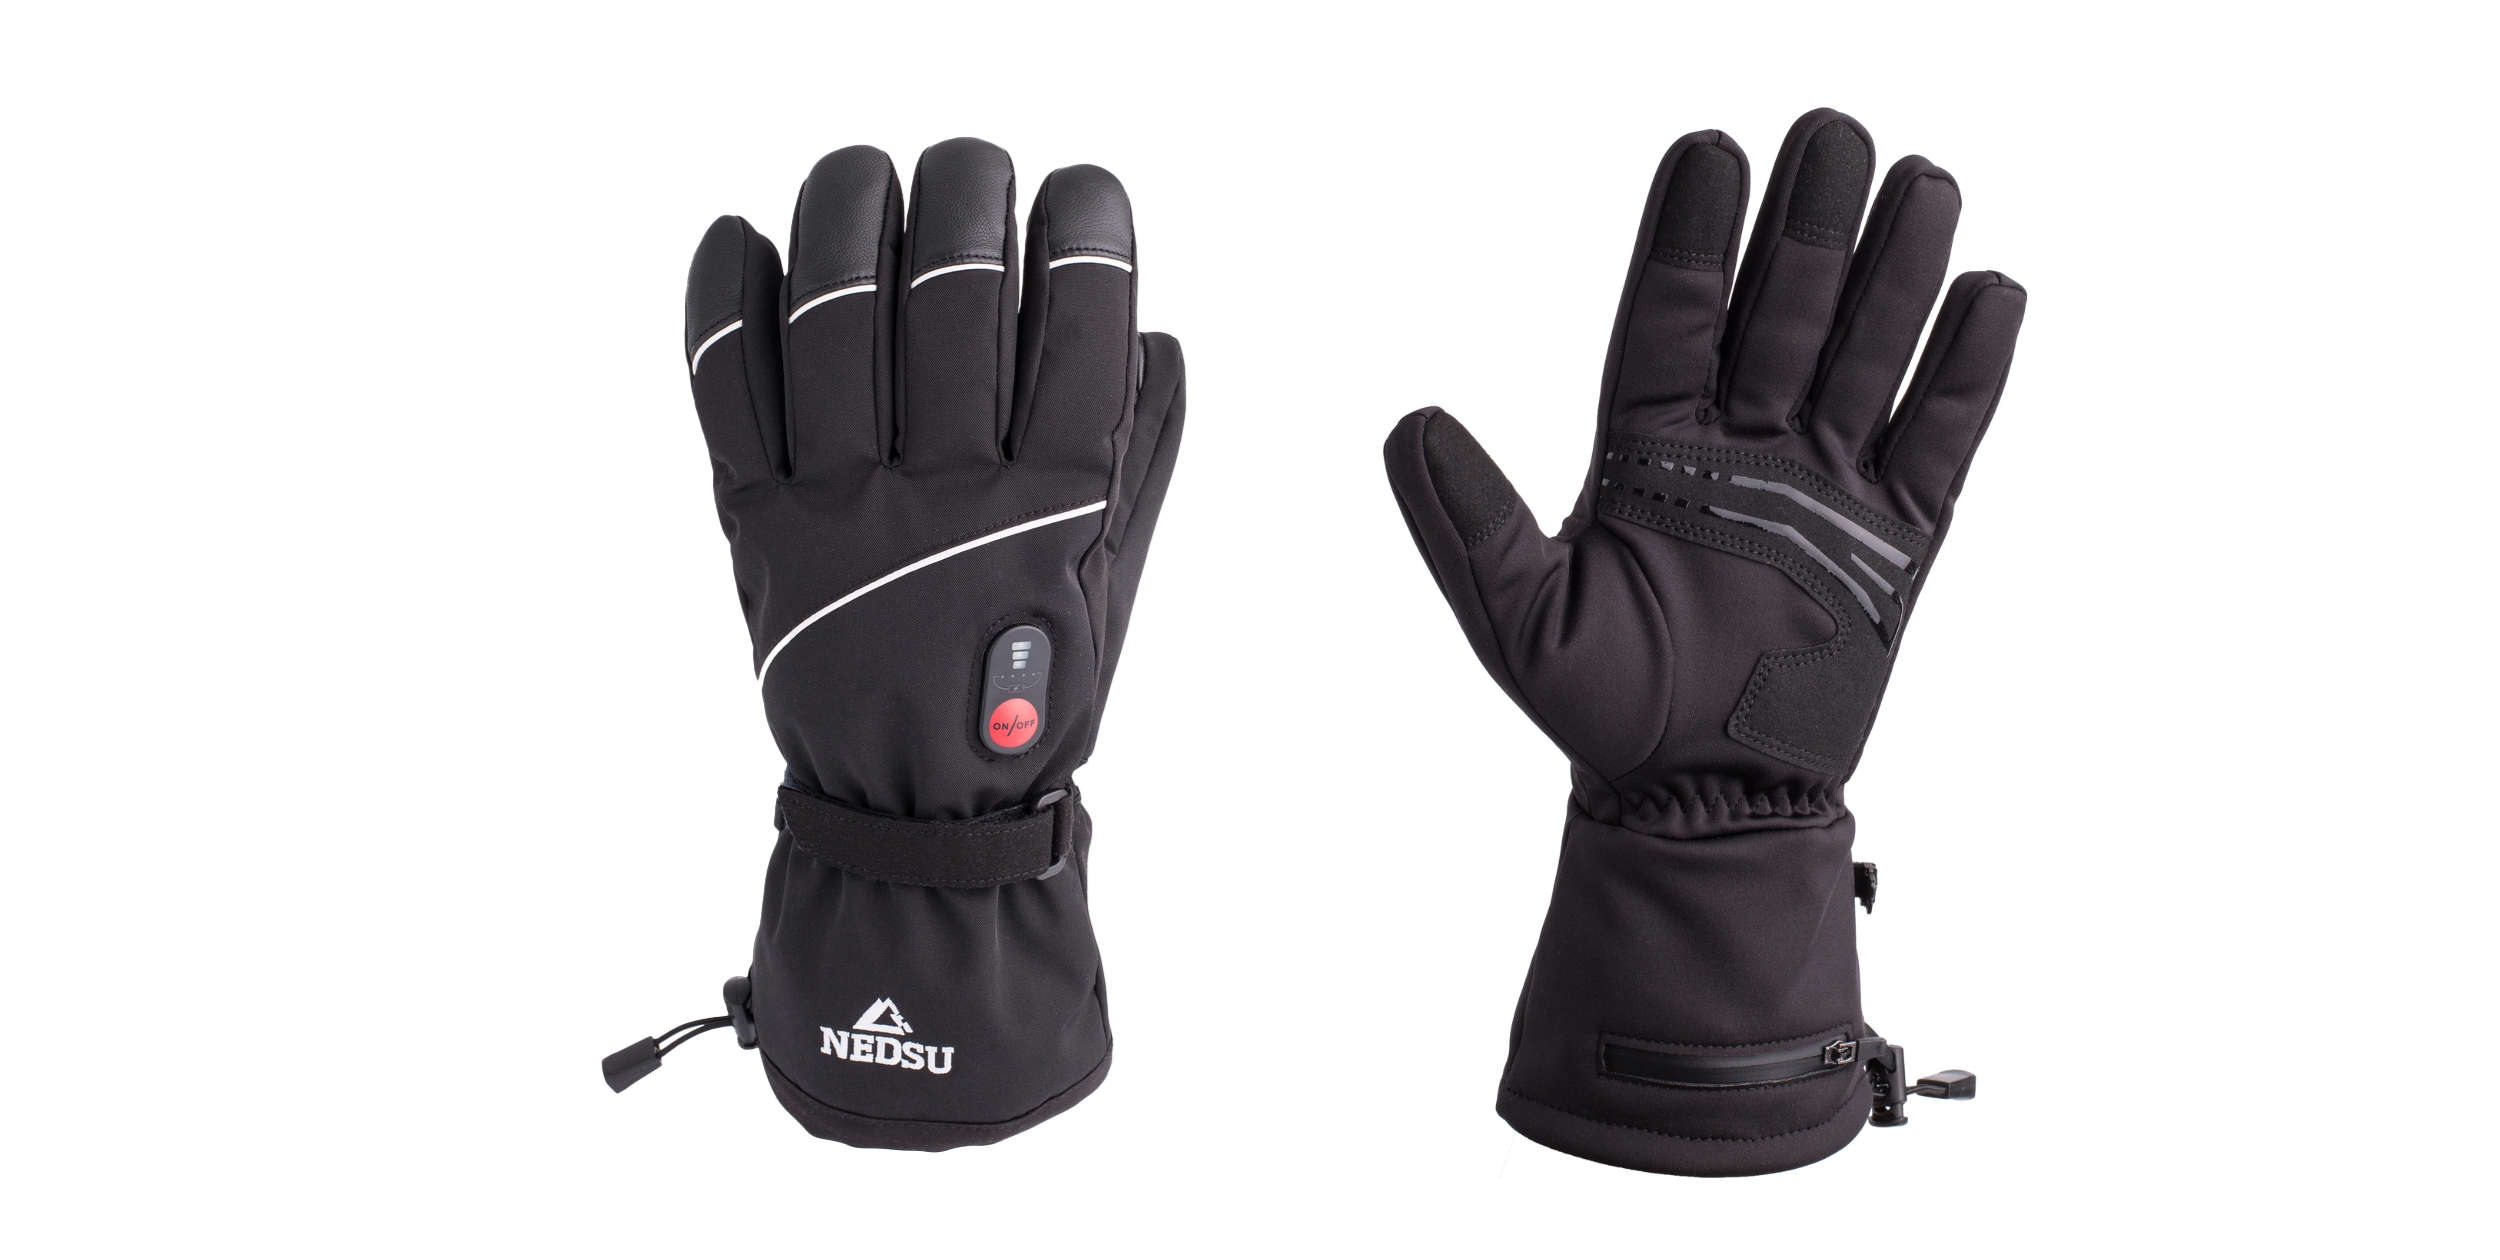 Nedsu Heated Gloves